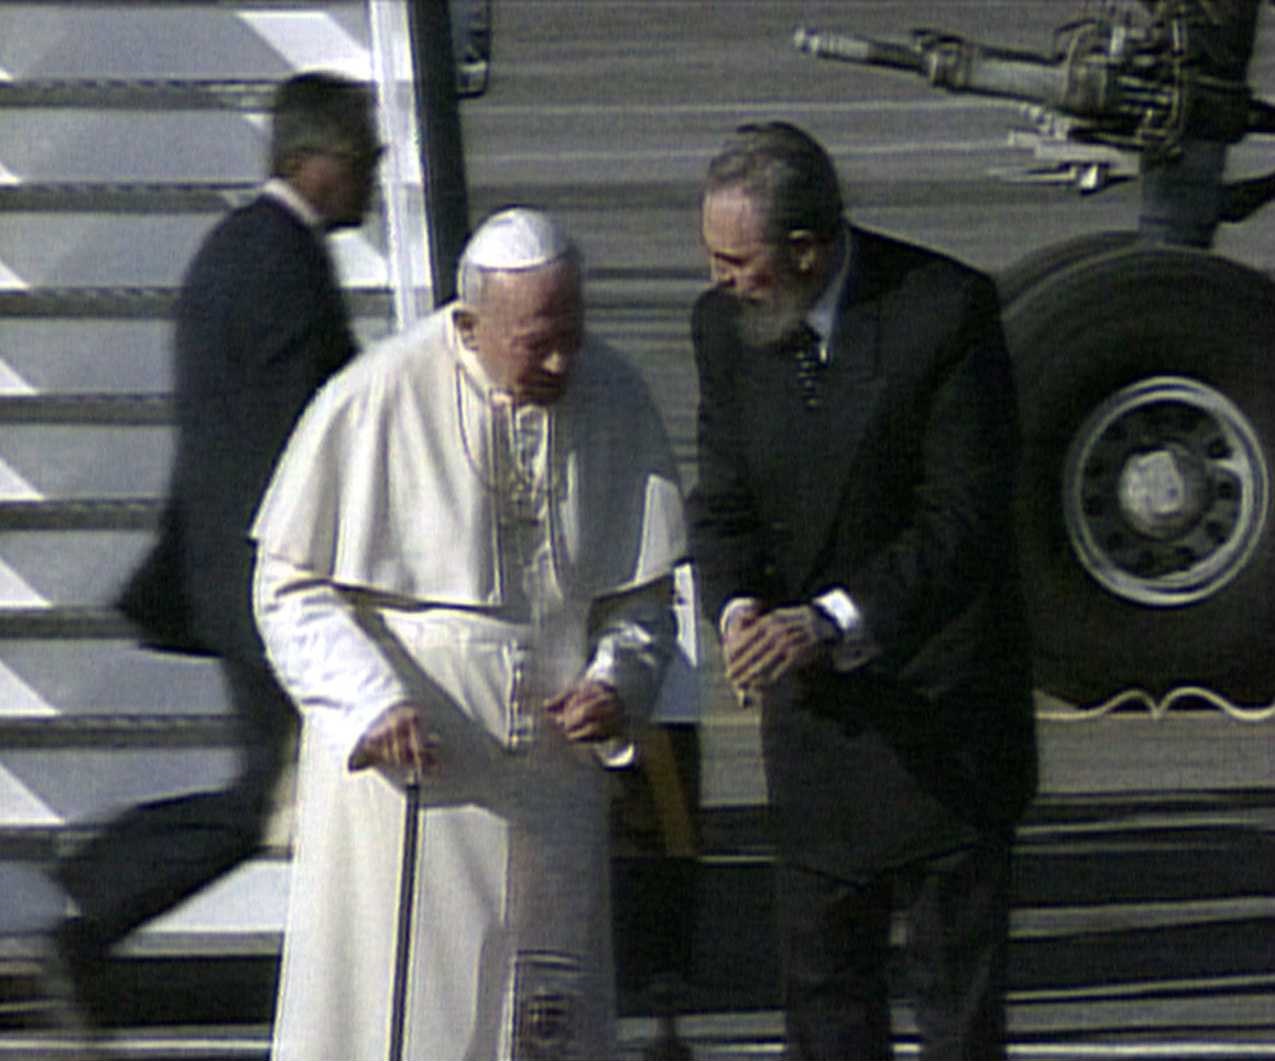 21 януари 1998 г. - Фидел Касро посреща папа Йоан Павел II в Хавана.